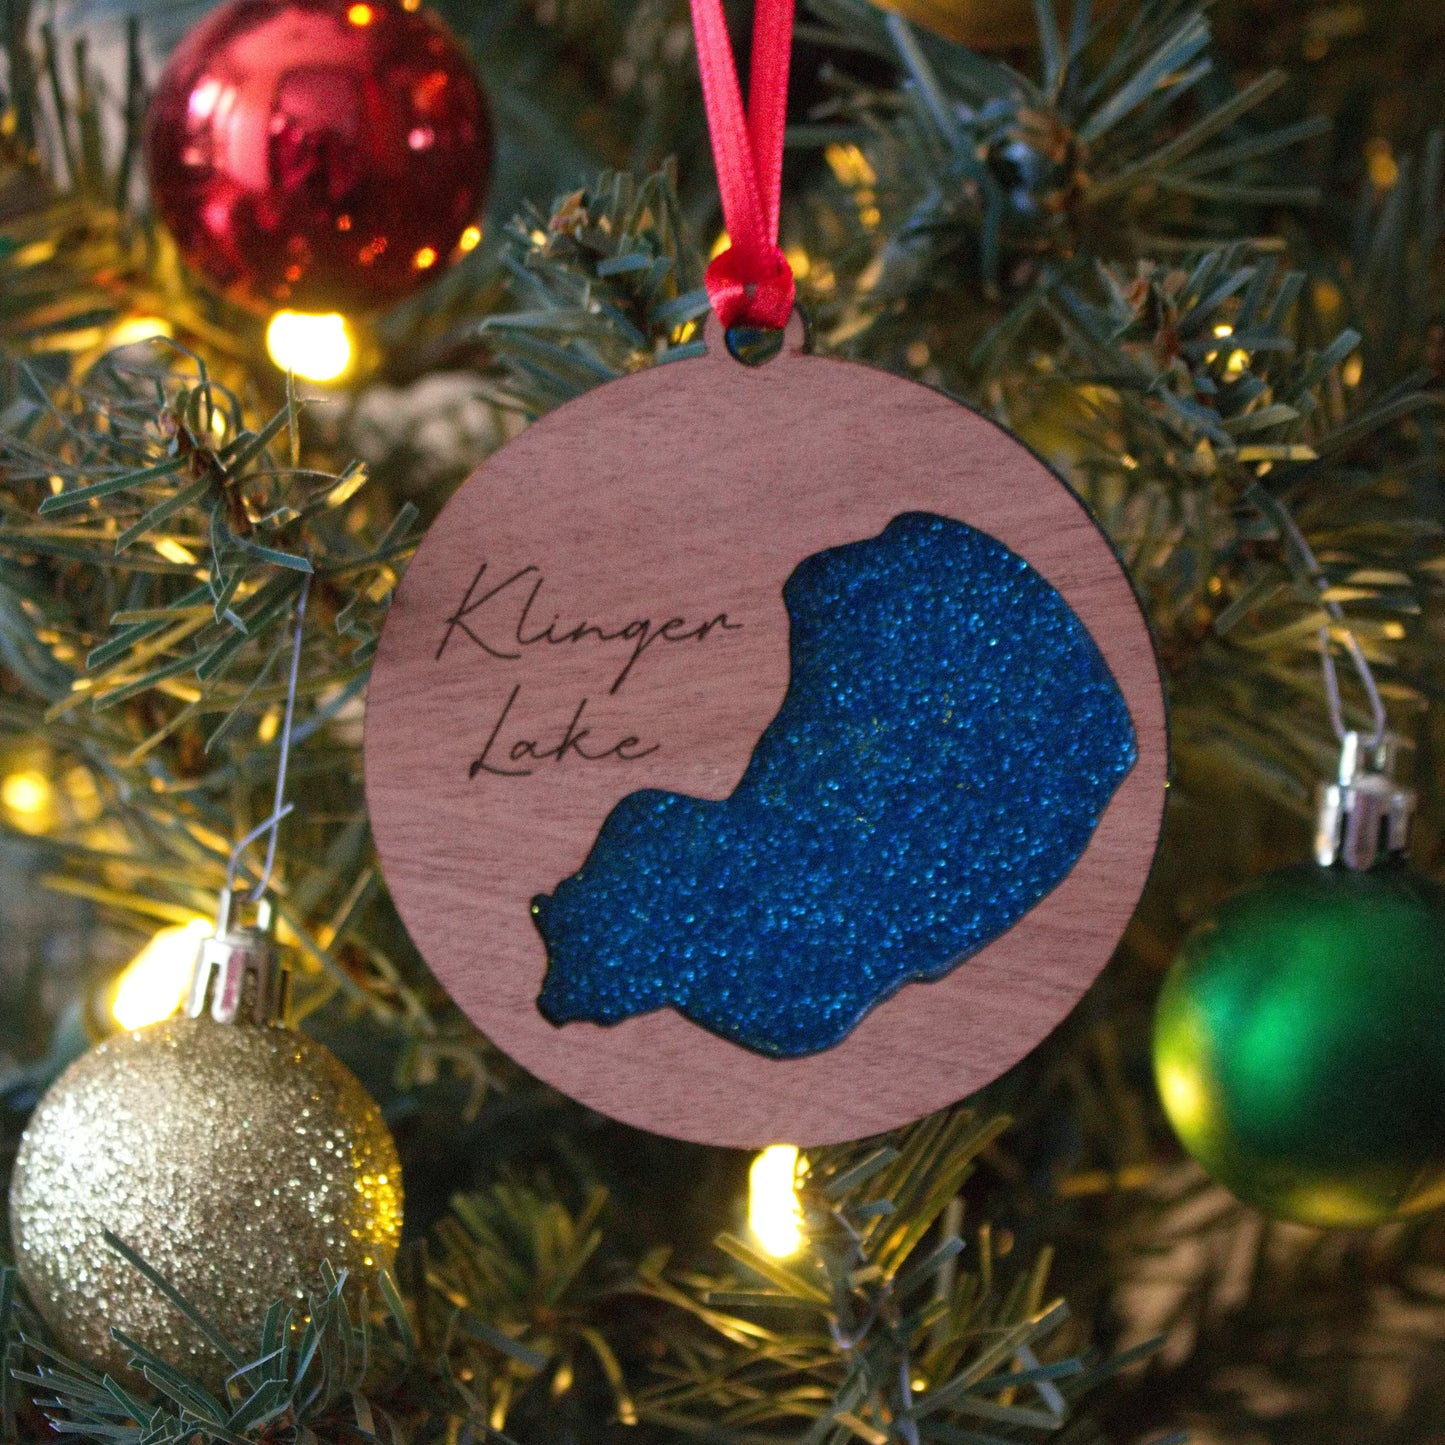 Glitter Acrylic and Wood Christmas Ornament Lake (Michigan)